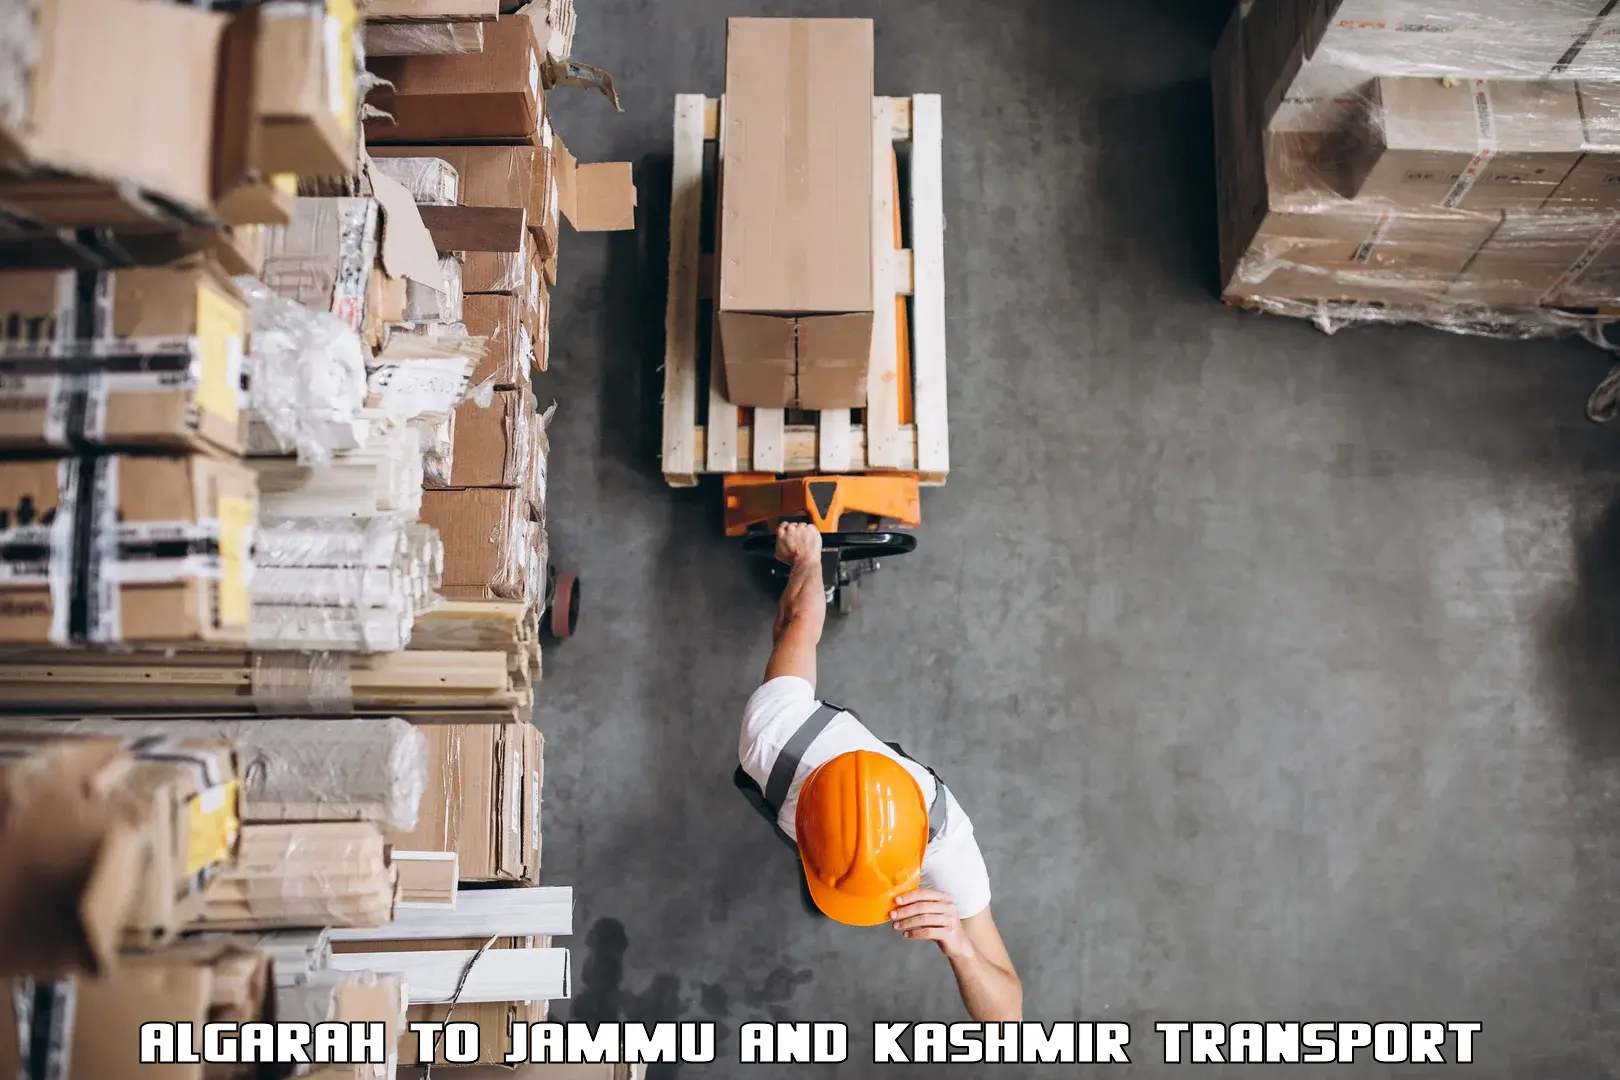 Air freight transport services Algarah to Jammu and Kashmir